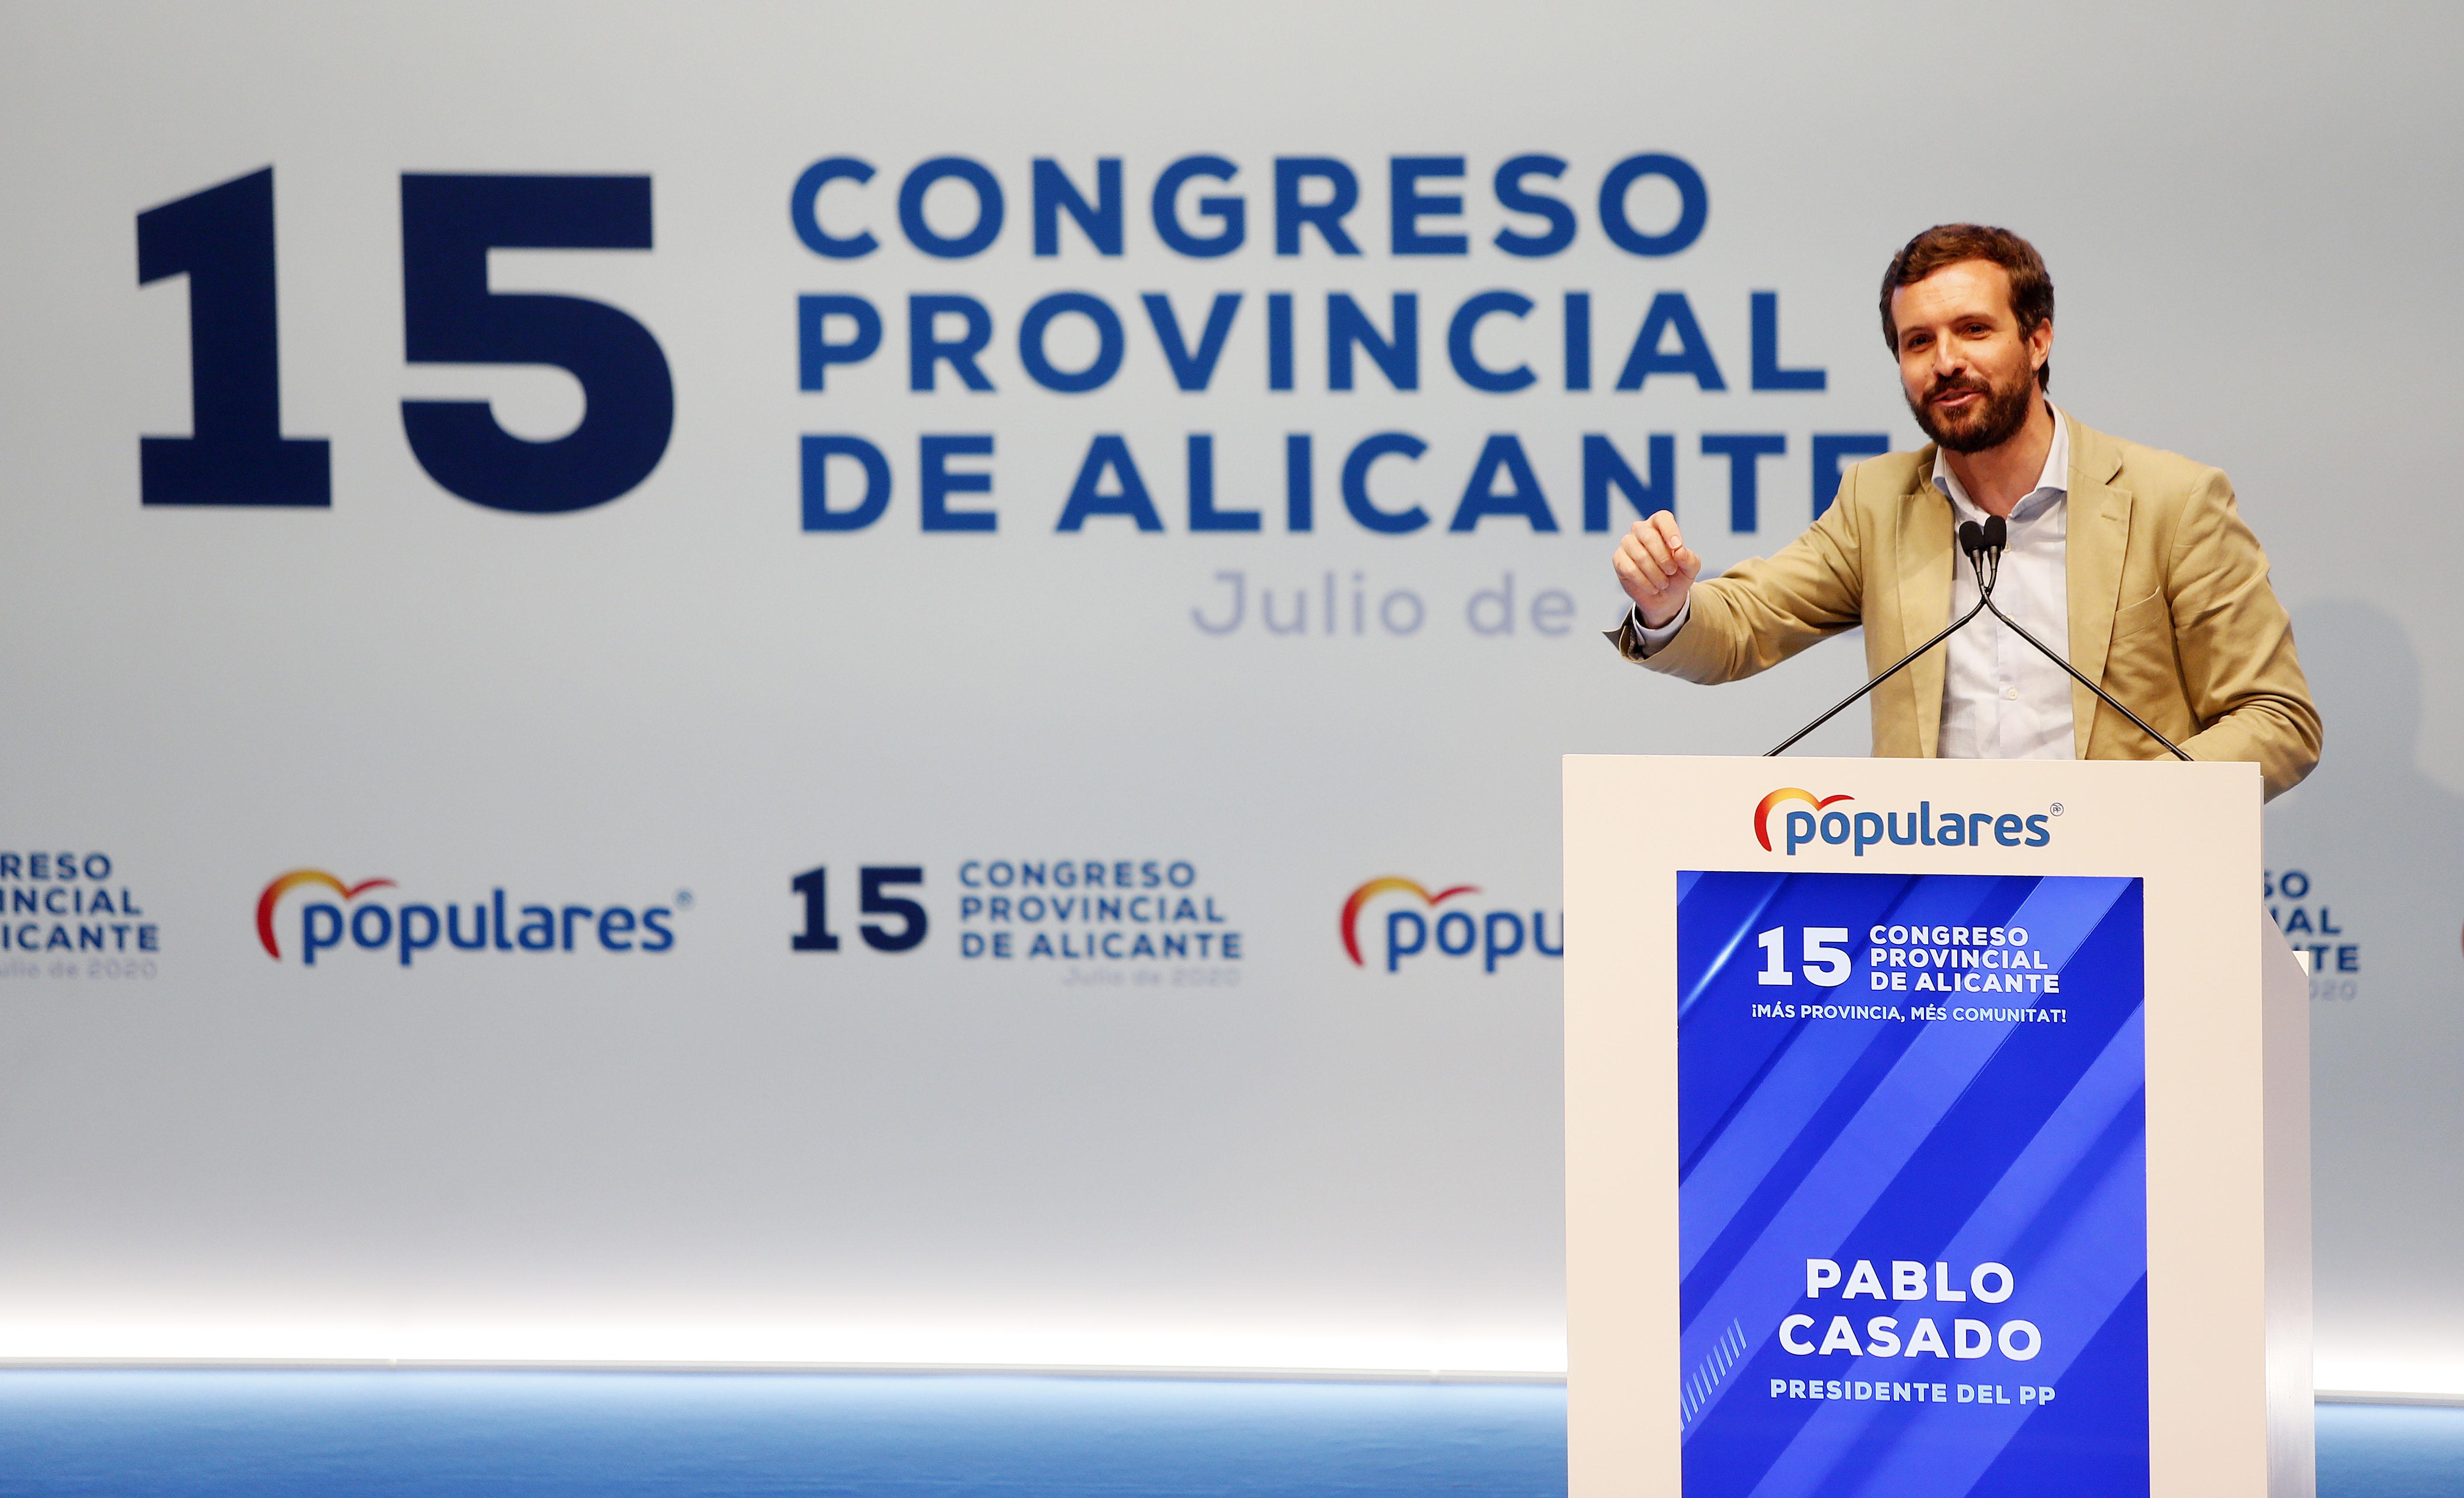 El presidente del Partido Popular, Pablo Casado, interviene en el acto de clausura del XV Congreso del Partido Popular Provincia de Alicante